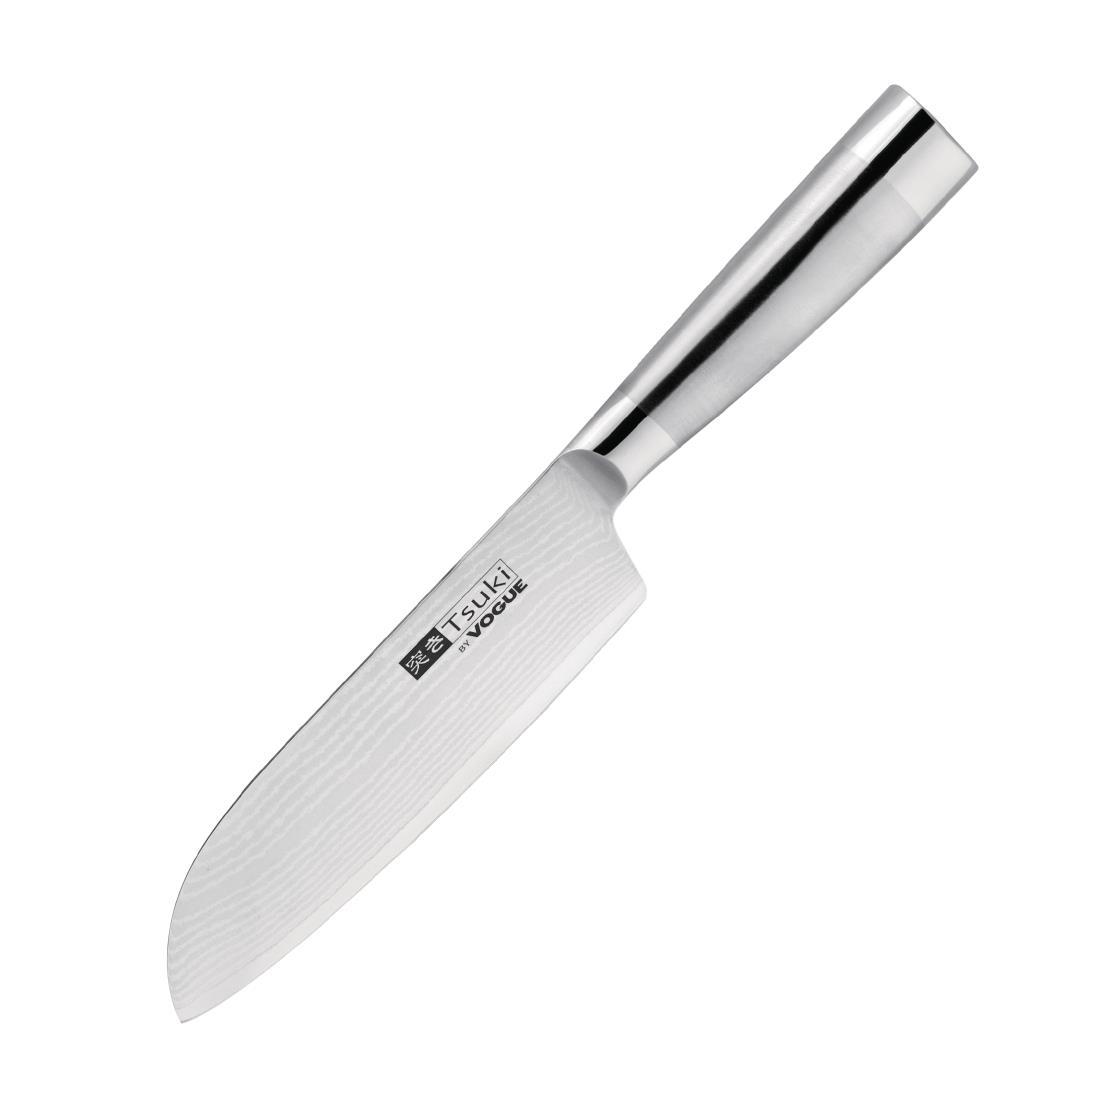 Vogue Tsuki Series 8 Santoku Knife 17.5cm - DA441  - 1